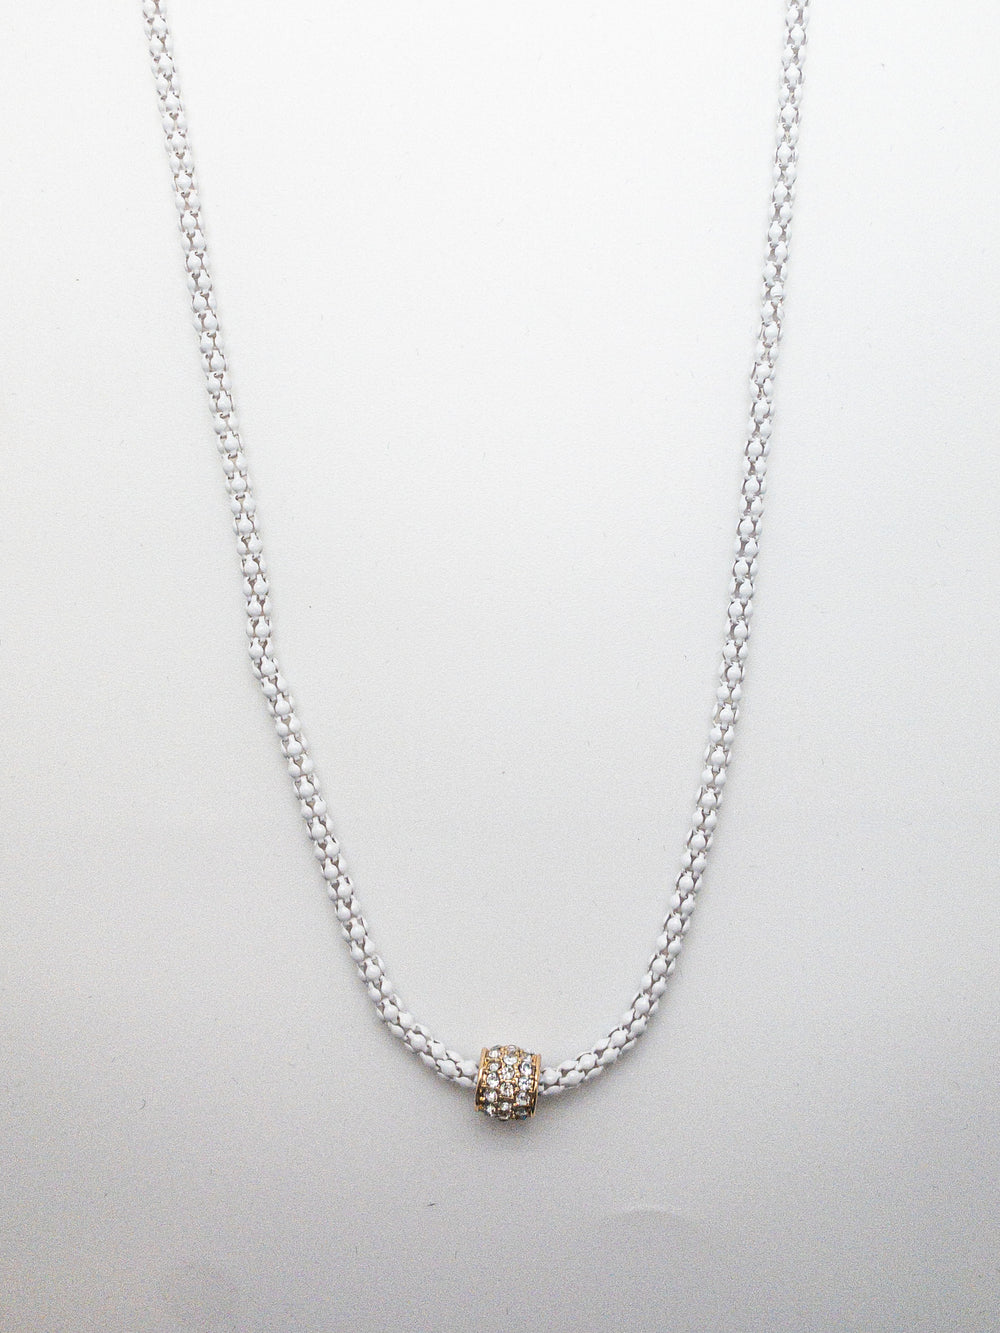 Scarlett necklace in white 